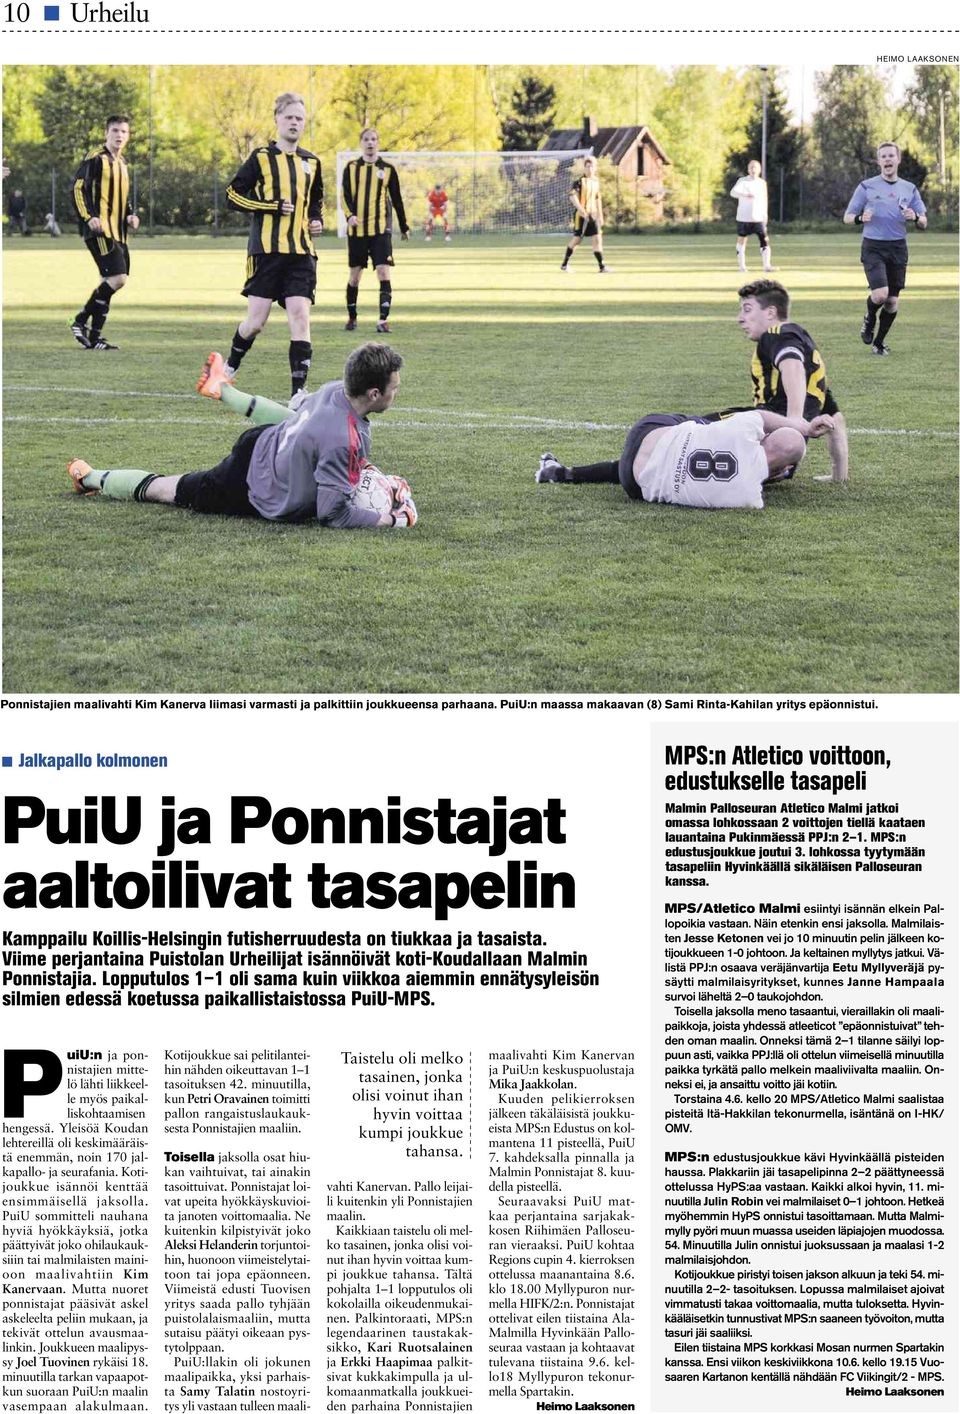 Viime perjantaina Puistolan Urheilijat isännöivät koti-koudallaan Malmin Ponnistajia. Lopputulos 1 1 oli sama kuin viikkoa aiemmin ennätysyleisön silmien edessä koetussa paikallistaistossa PuiU-MPS.